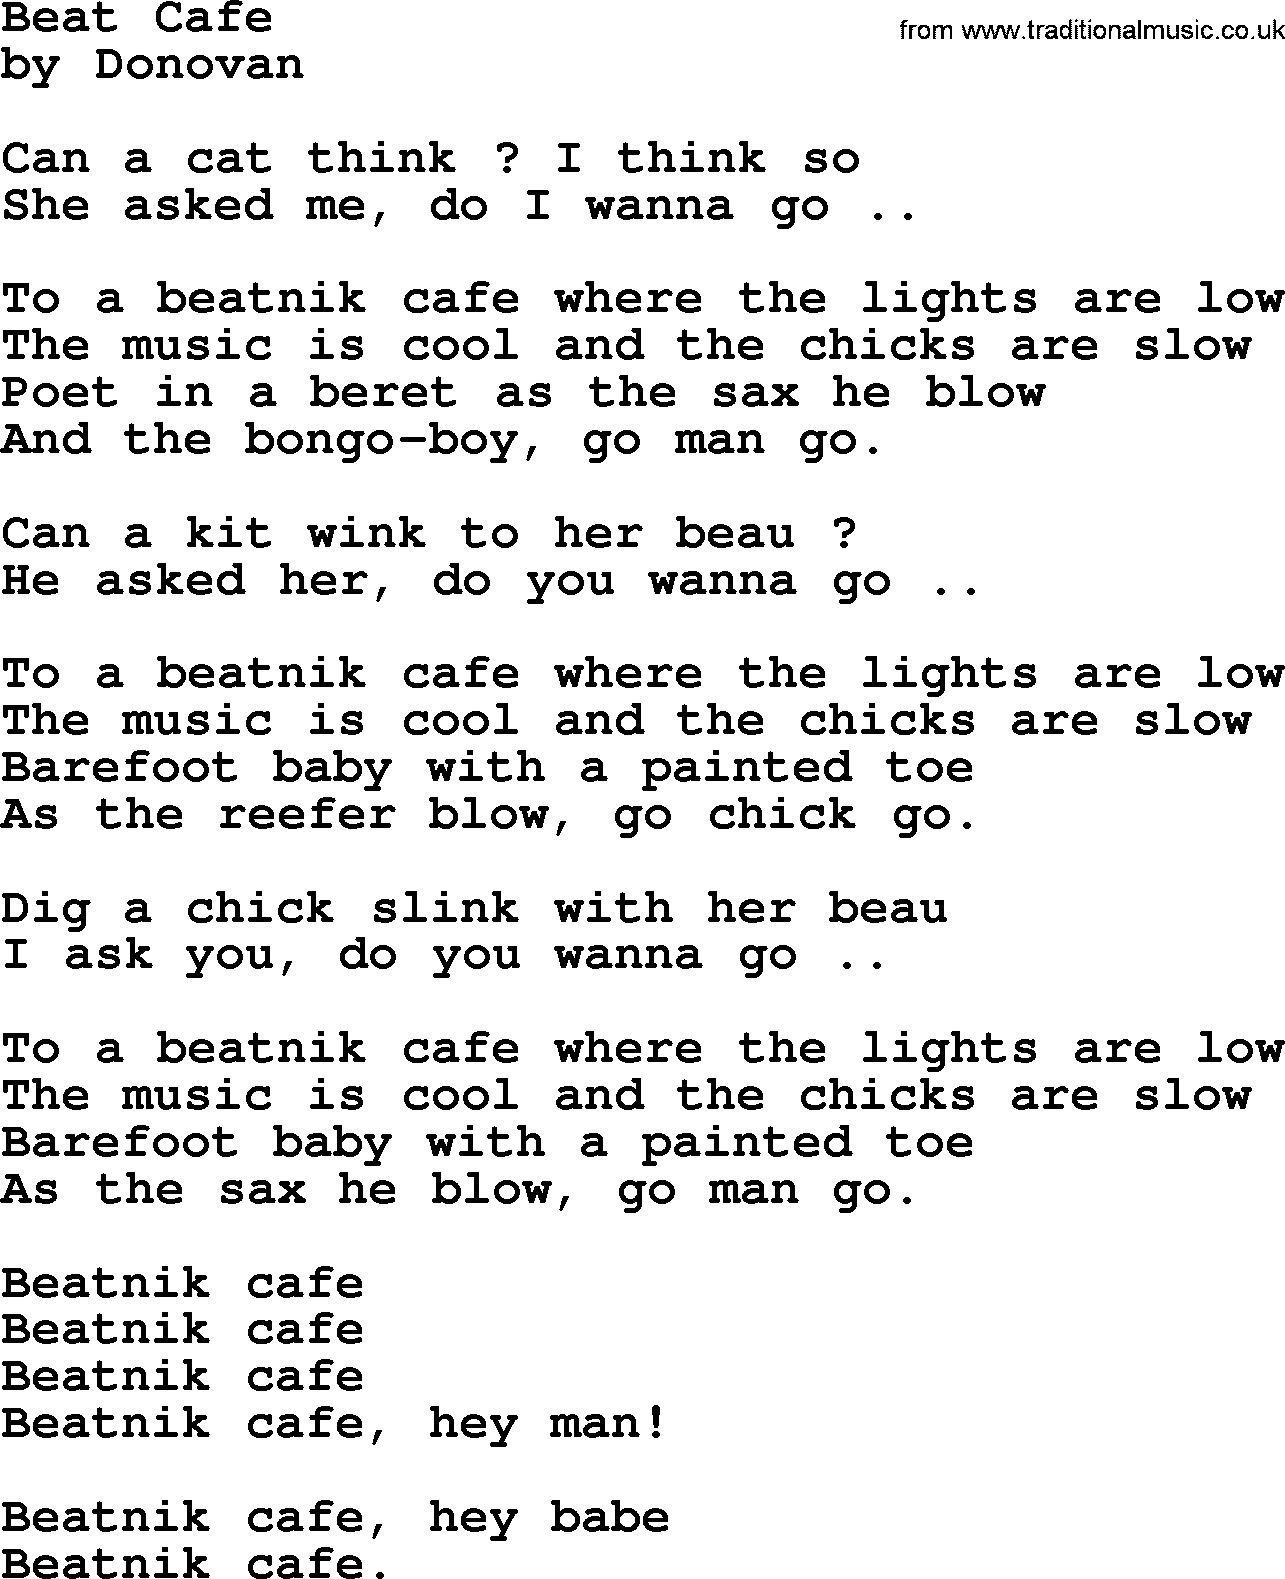 Donovan Leitch song: Beat Cafe lyrics